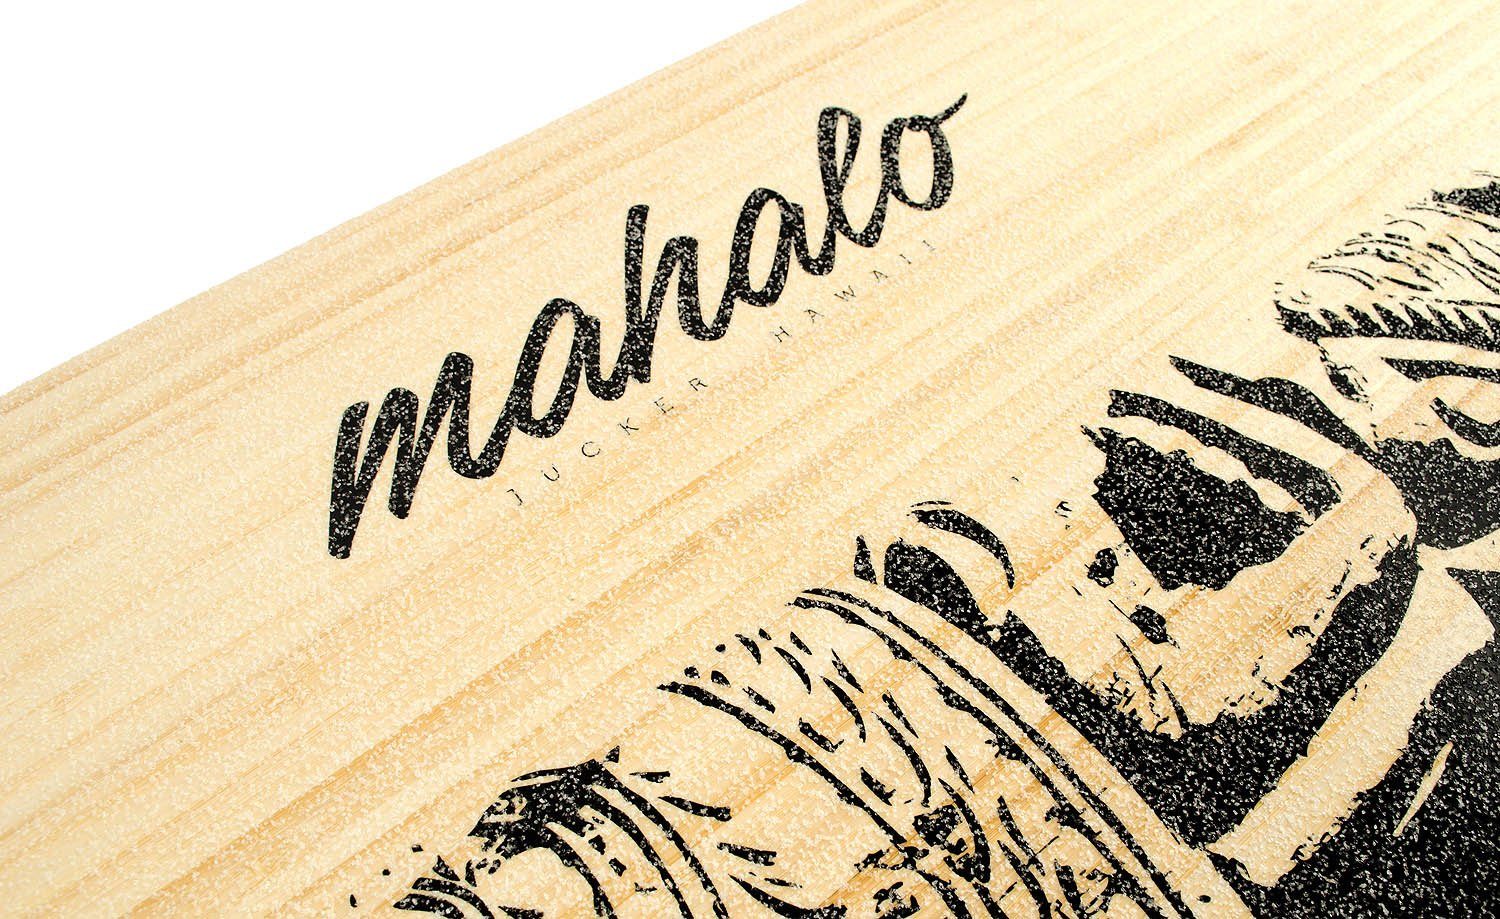 Korkrolle, HAWAII Hawaiianisches Einzigartiges Design Makaha inkl. Board Bambus Set Balanceboard JUCKER Balance AKA -